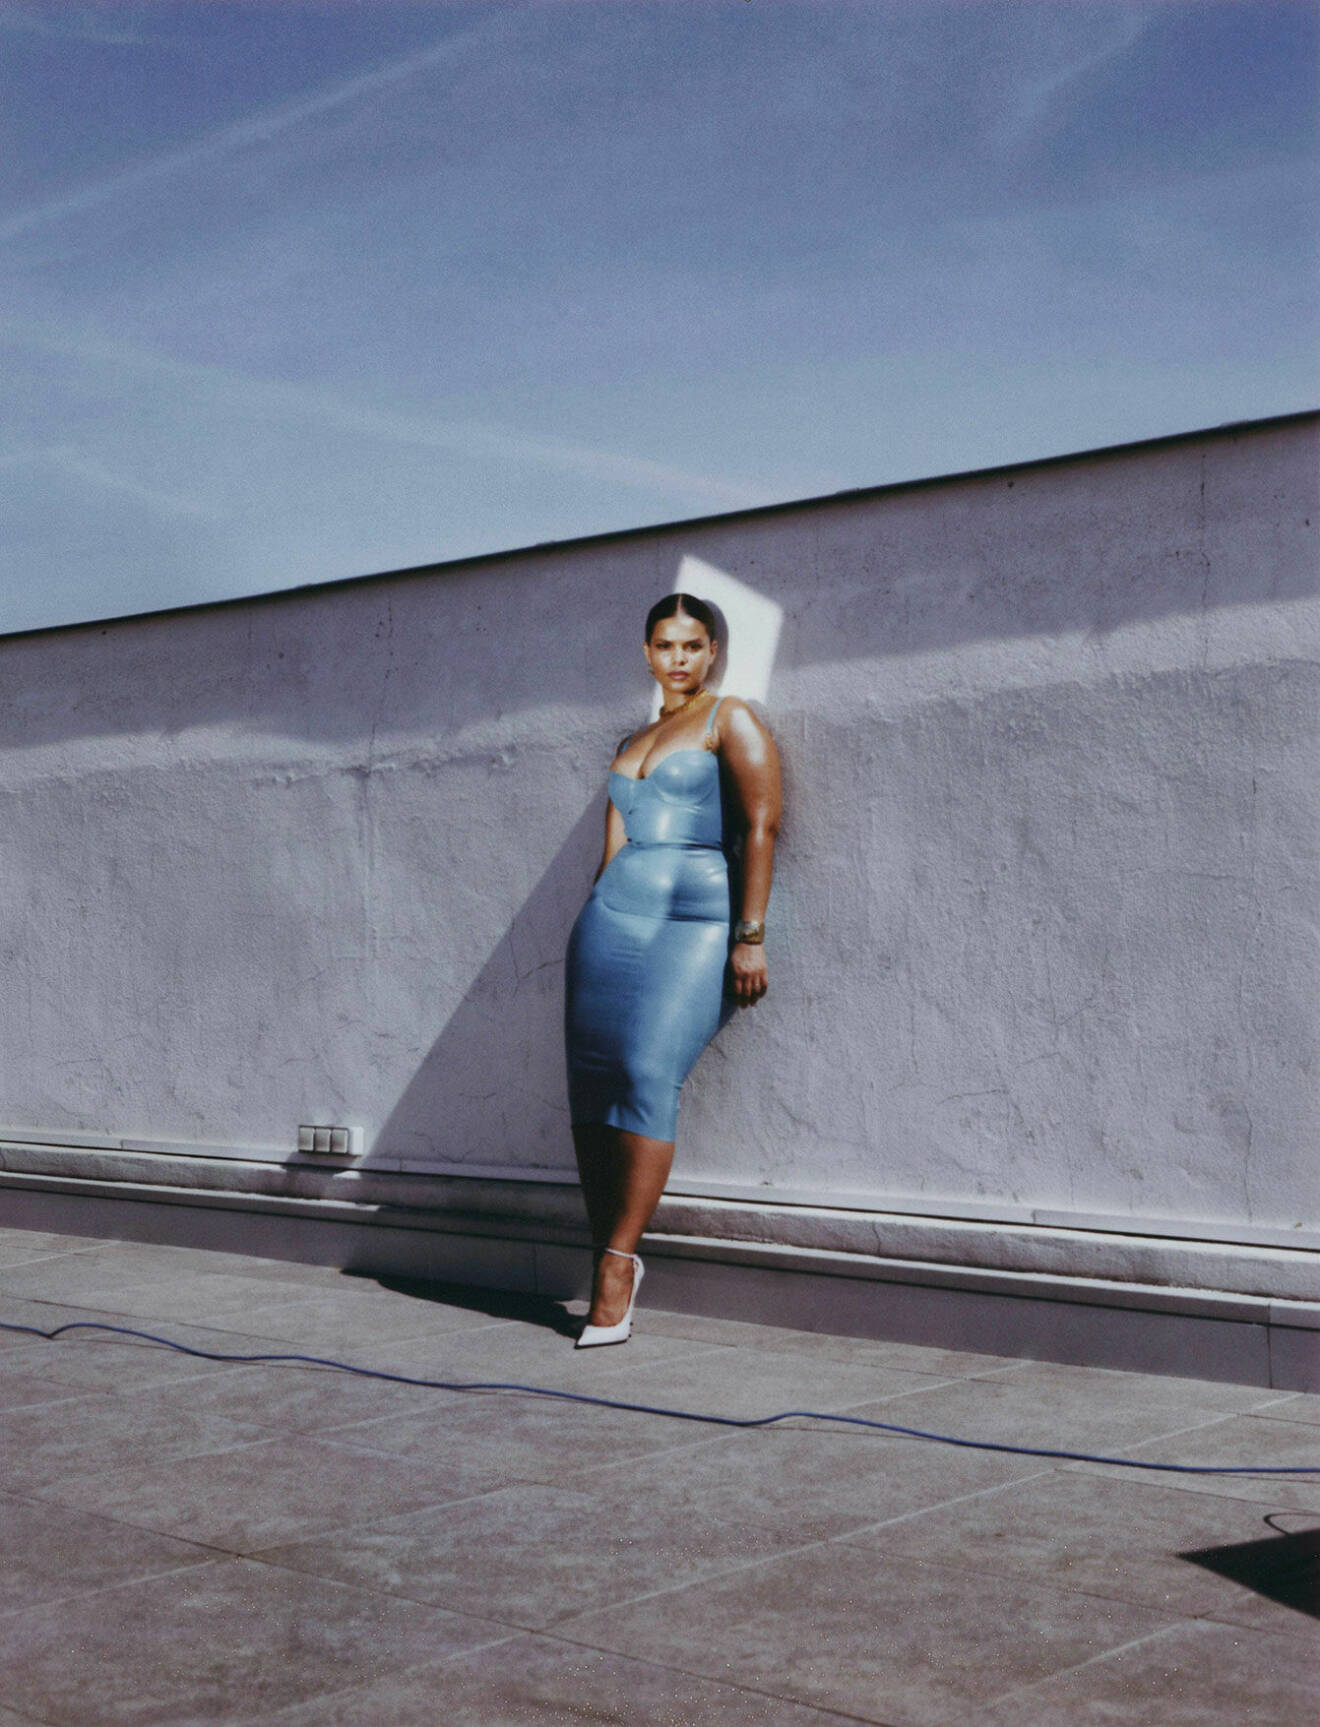 Modellen står lutad mot en vägg, hon har på sig en blå klänning och vita pumps